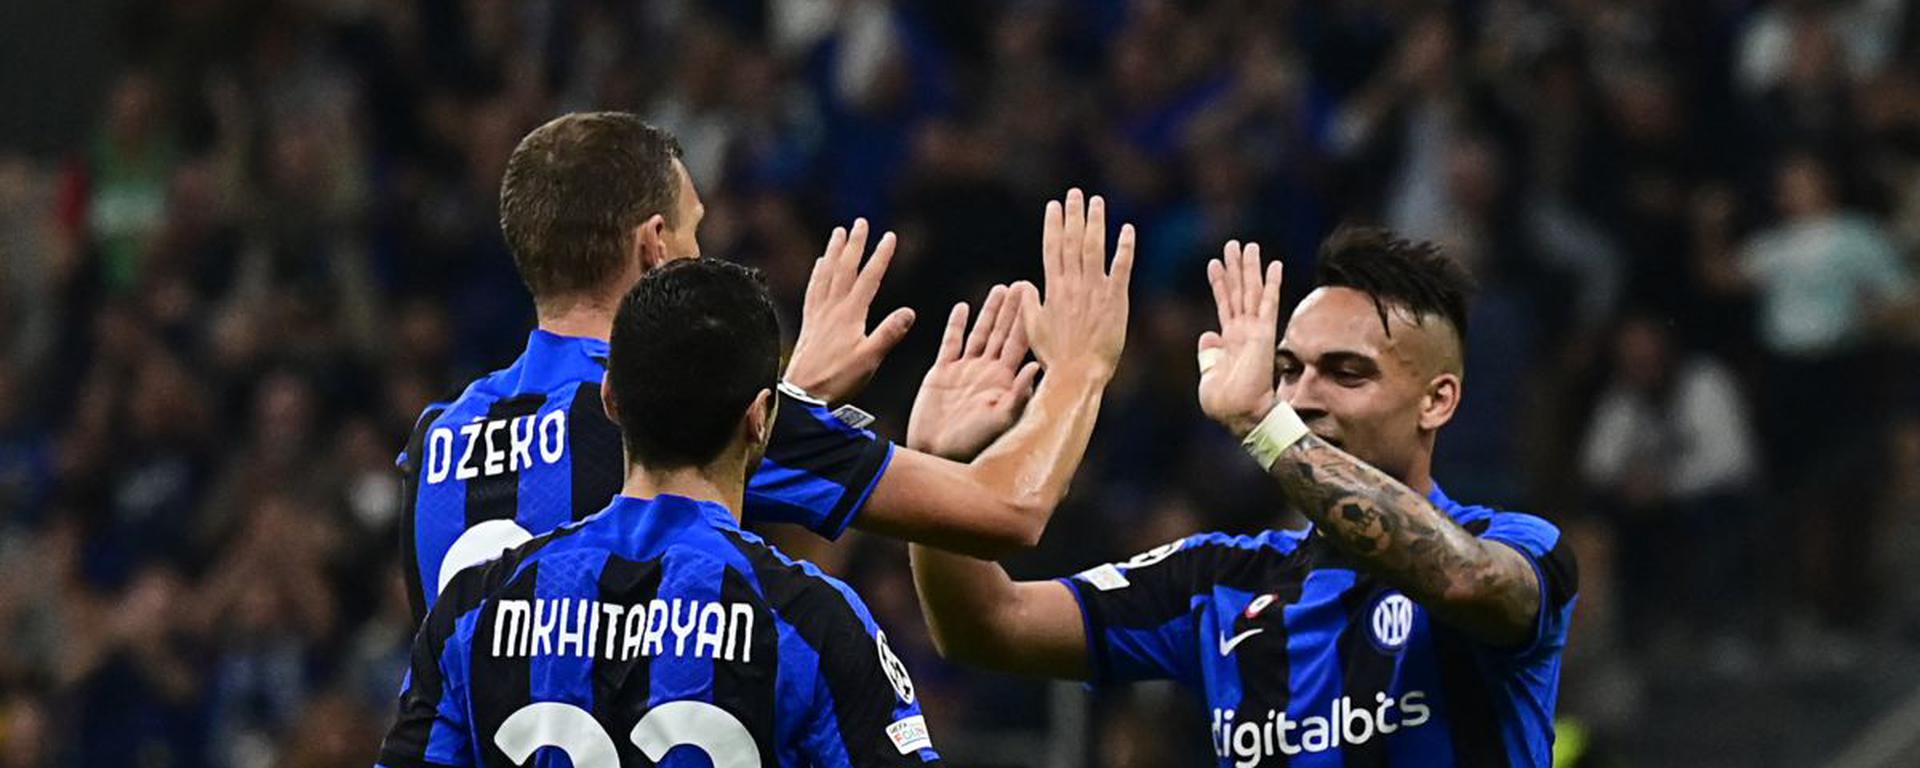 Inter con el veterano Dzeko y el batallador Lautaro iniciaron una venganza histórica ante el Milan | CRÓNICA